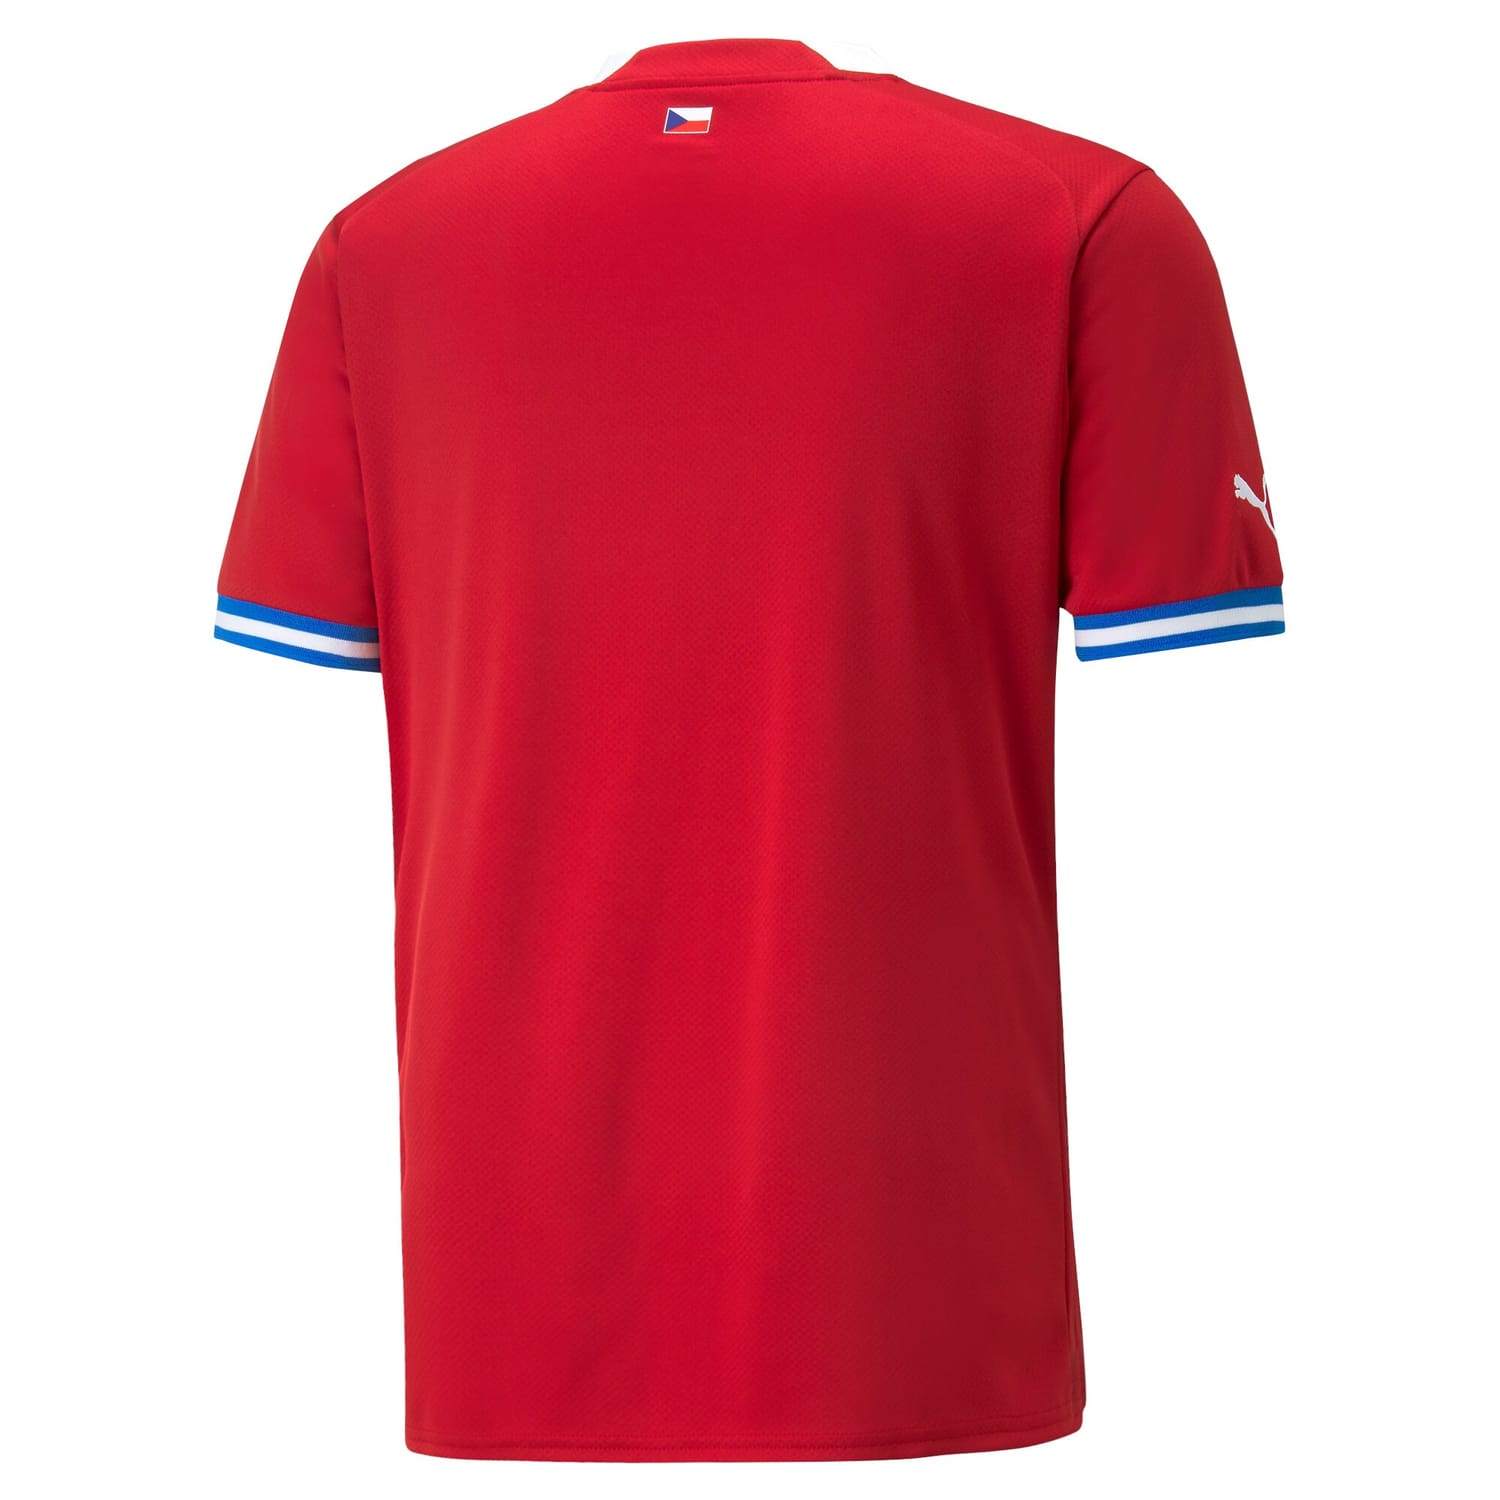 Czech Republic National Team Home Jersey Shirt 2022 for Men